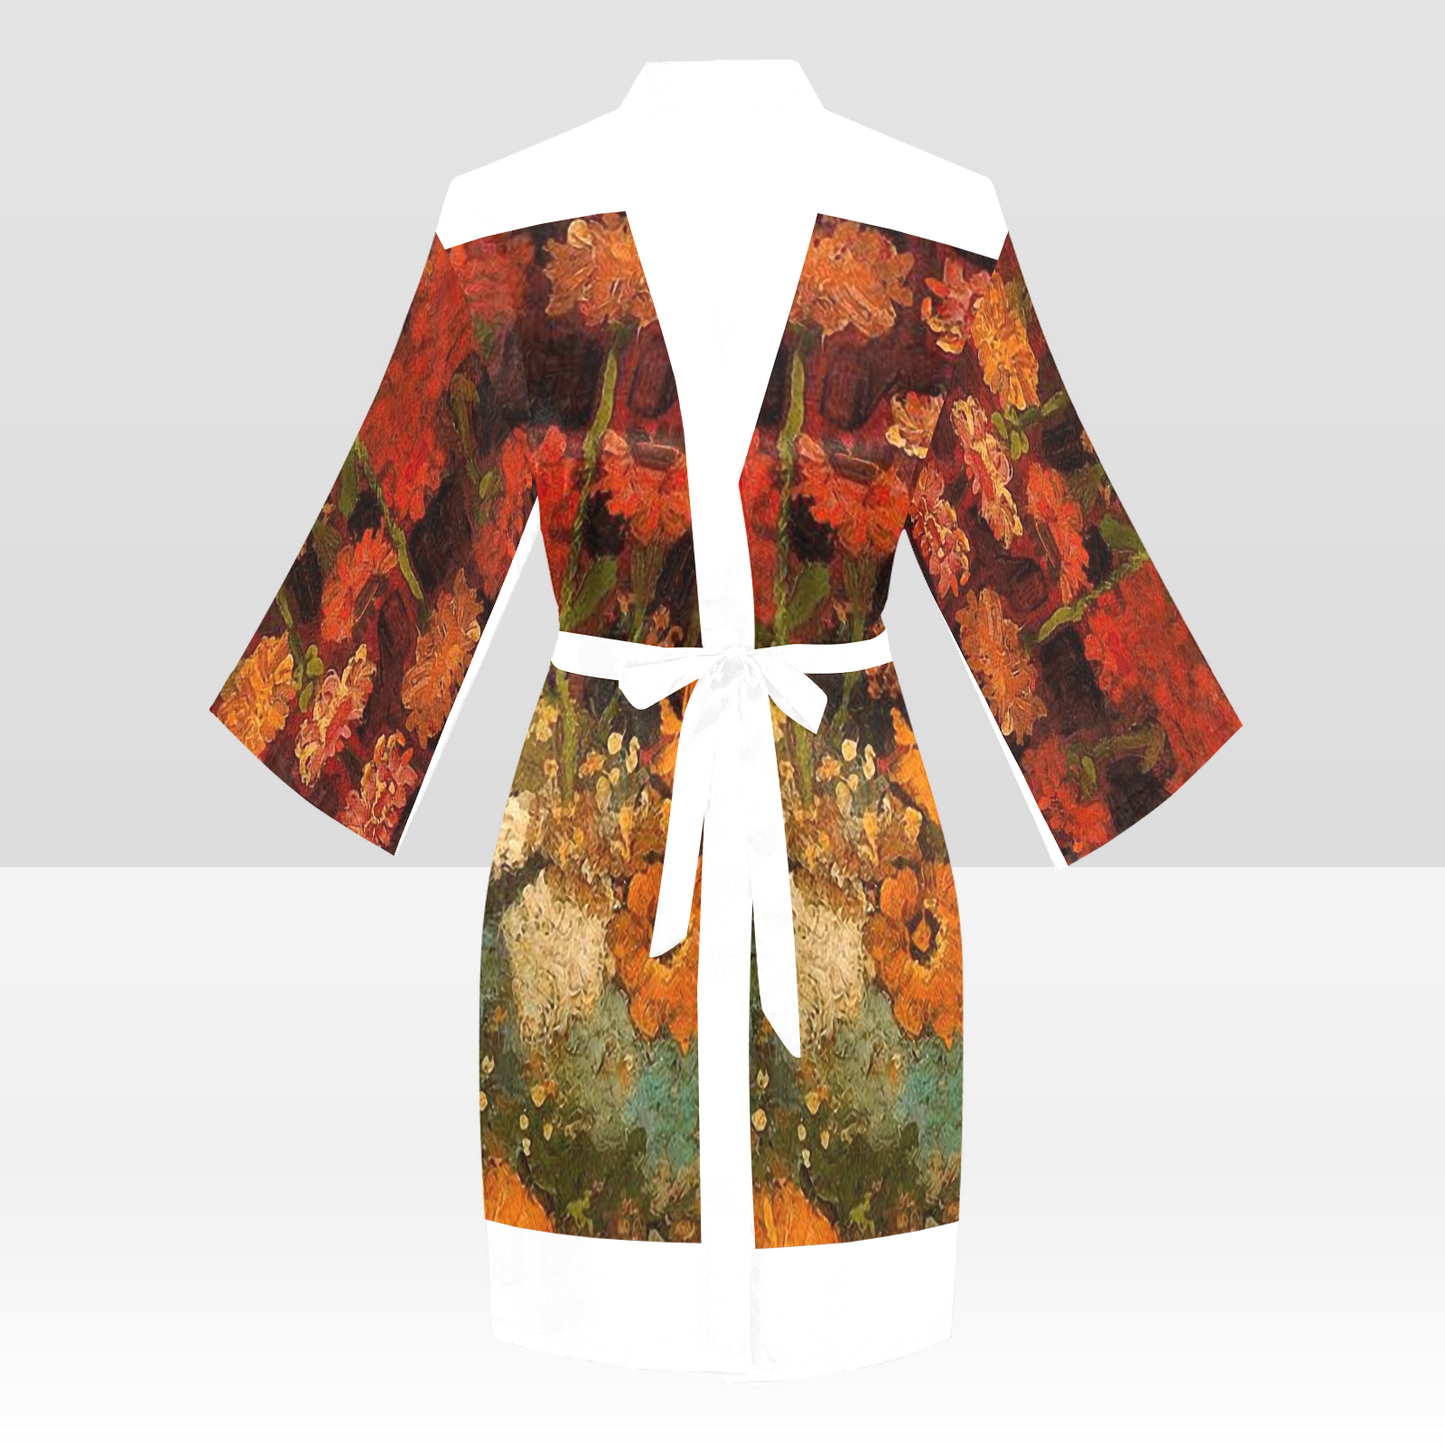 Vintage Floral Kimono Robe, Black or White Trim, Sizes XS to 2XL, Design 31